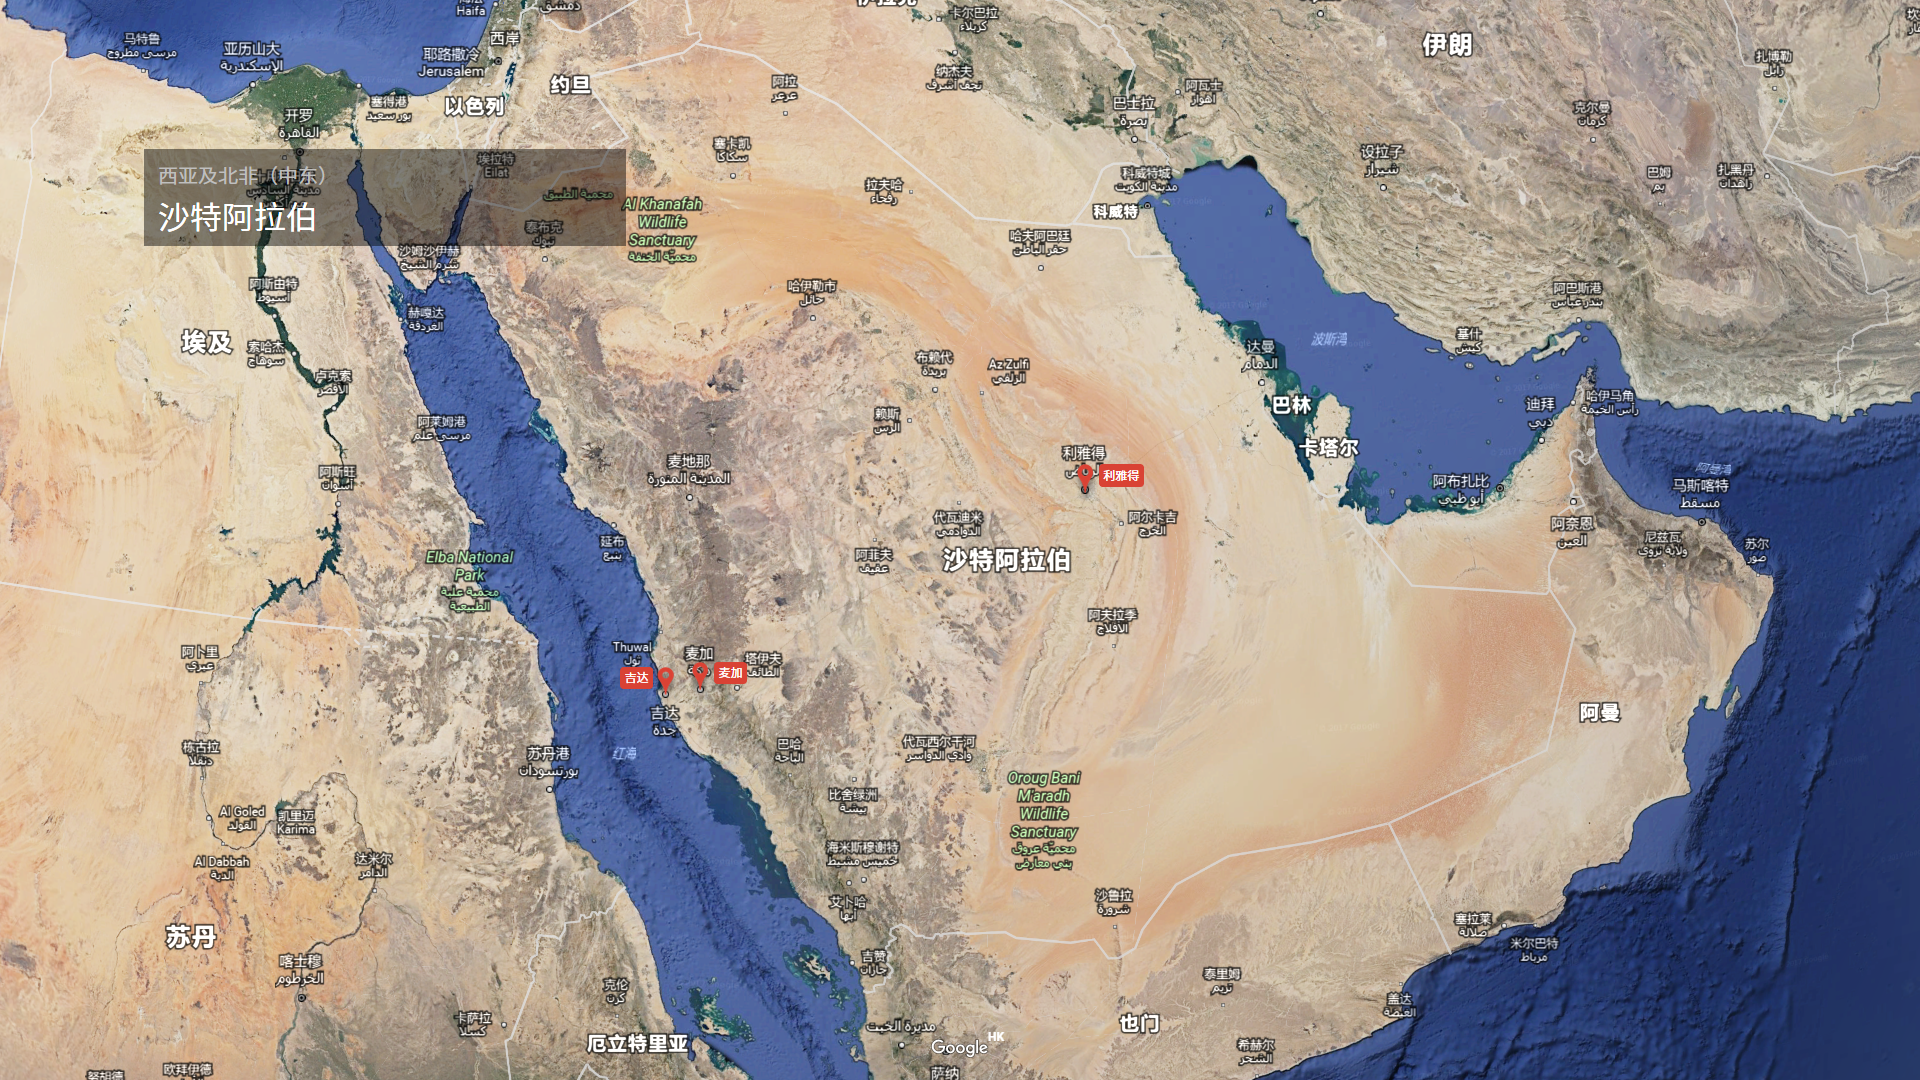 图文解读沙特阿拉伯地理和历史 - 知乎